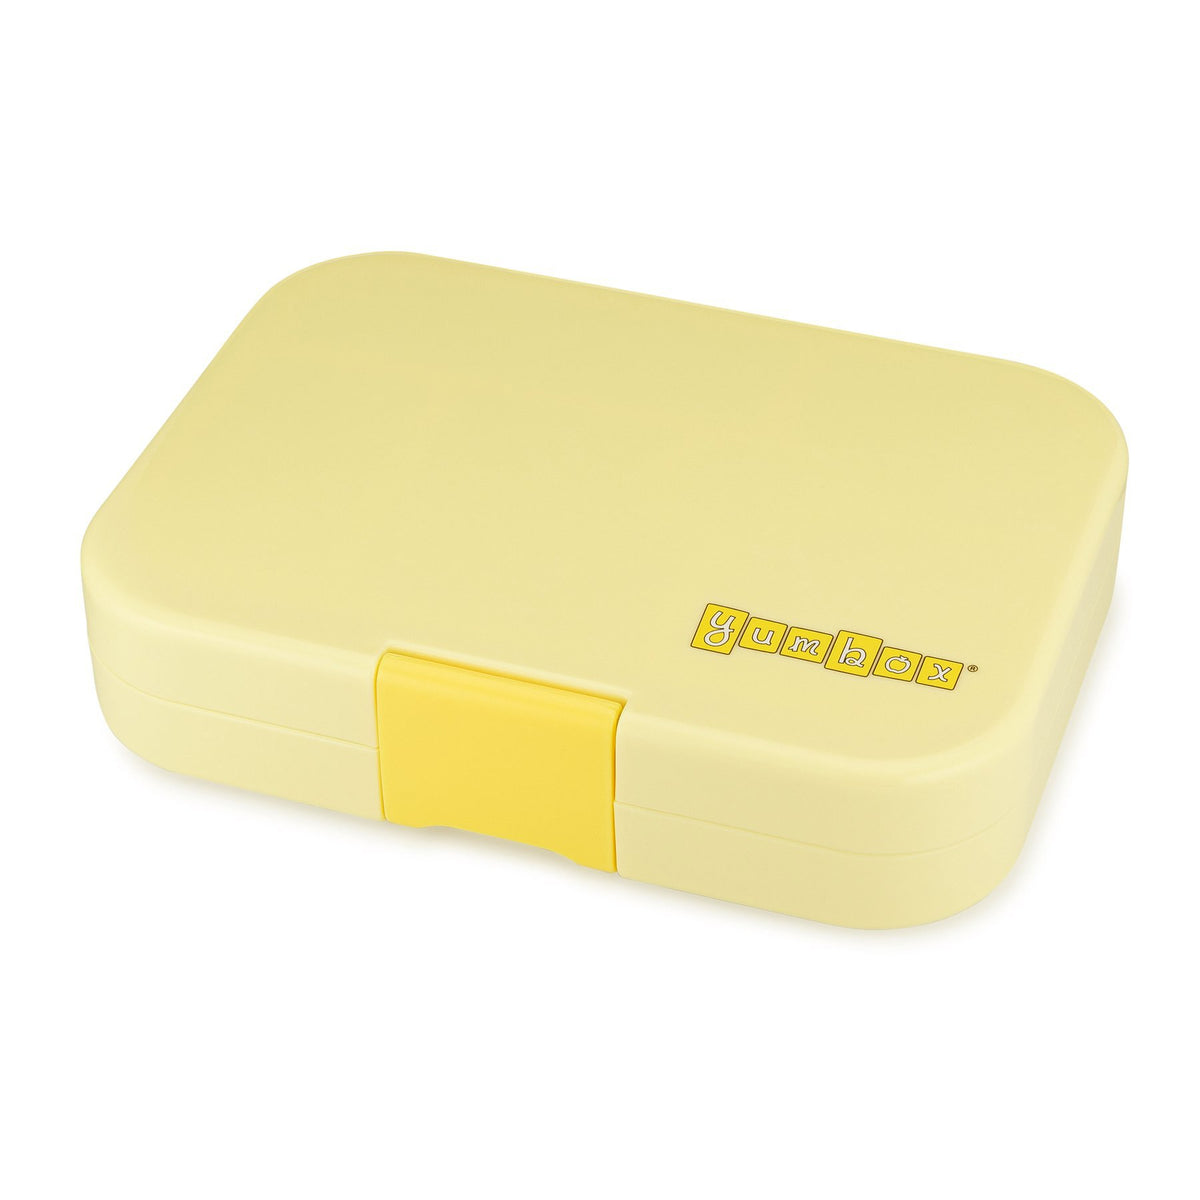 yumbox-panino-sunburst-yellow-4-compartment-lunch-box- (3)